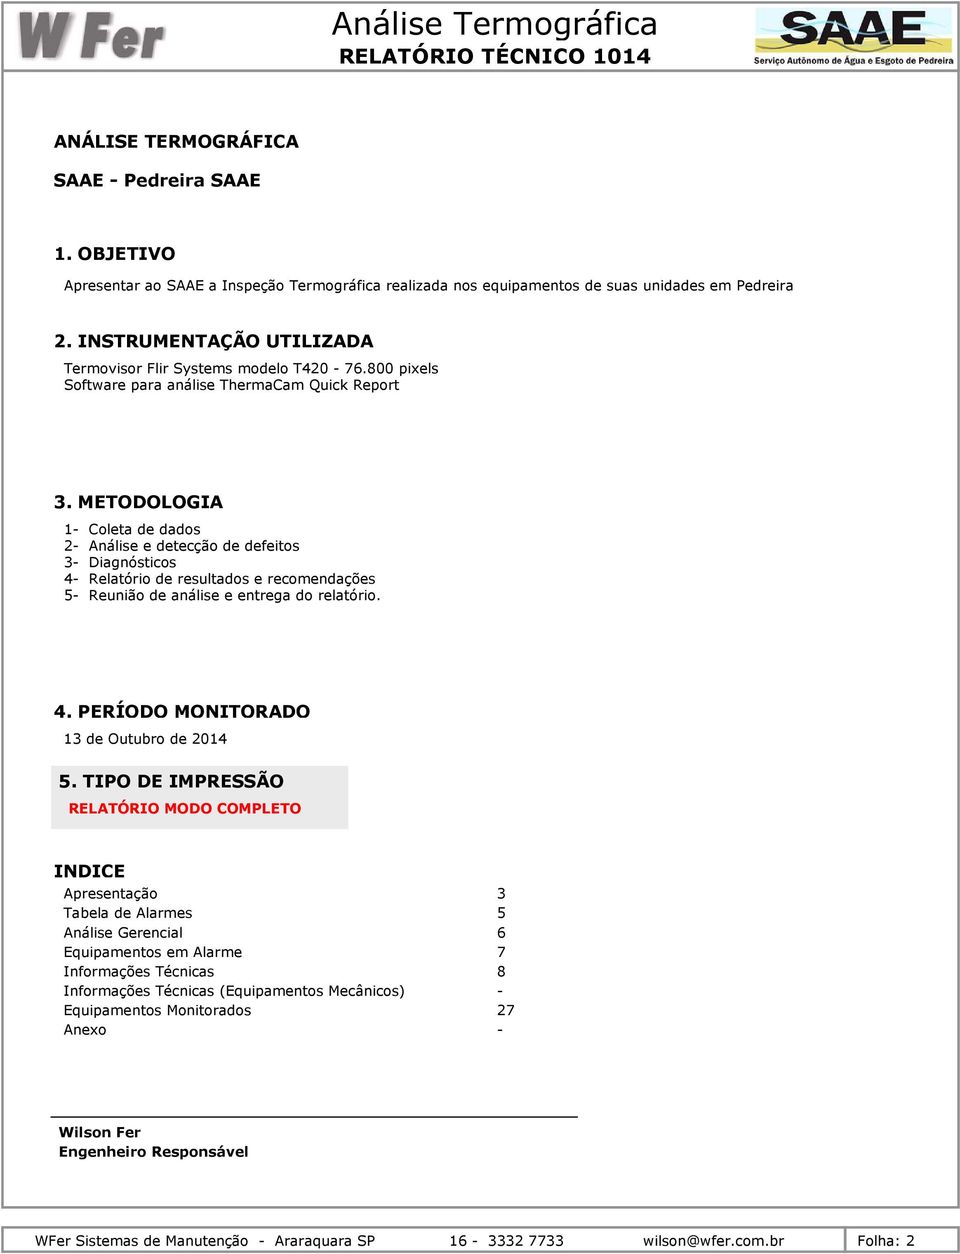 METODOLOGIA 1- Coleta de dados 2- Análise e detecção de defeitos 3- Diagnósticos 4- Relatório de resultados e recomendações 5- Reunião de análise e entrega do relatório. 4. PERÍODO MONITORADO 13 de Outubro de 2014 5.